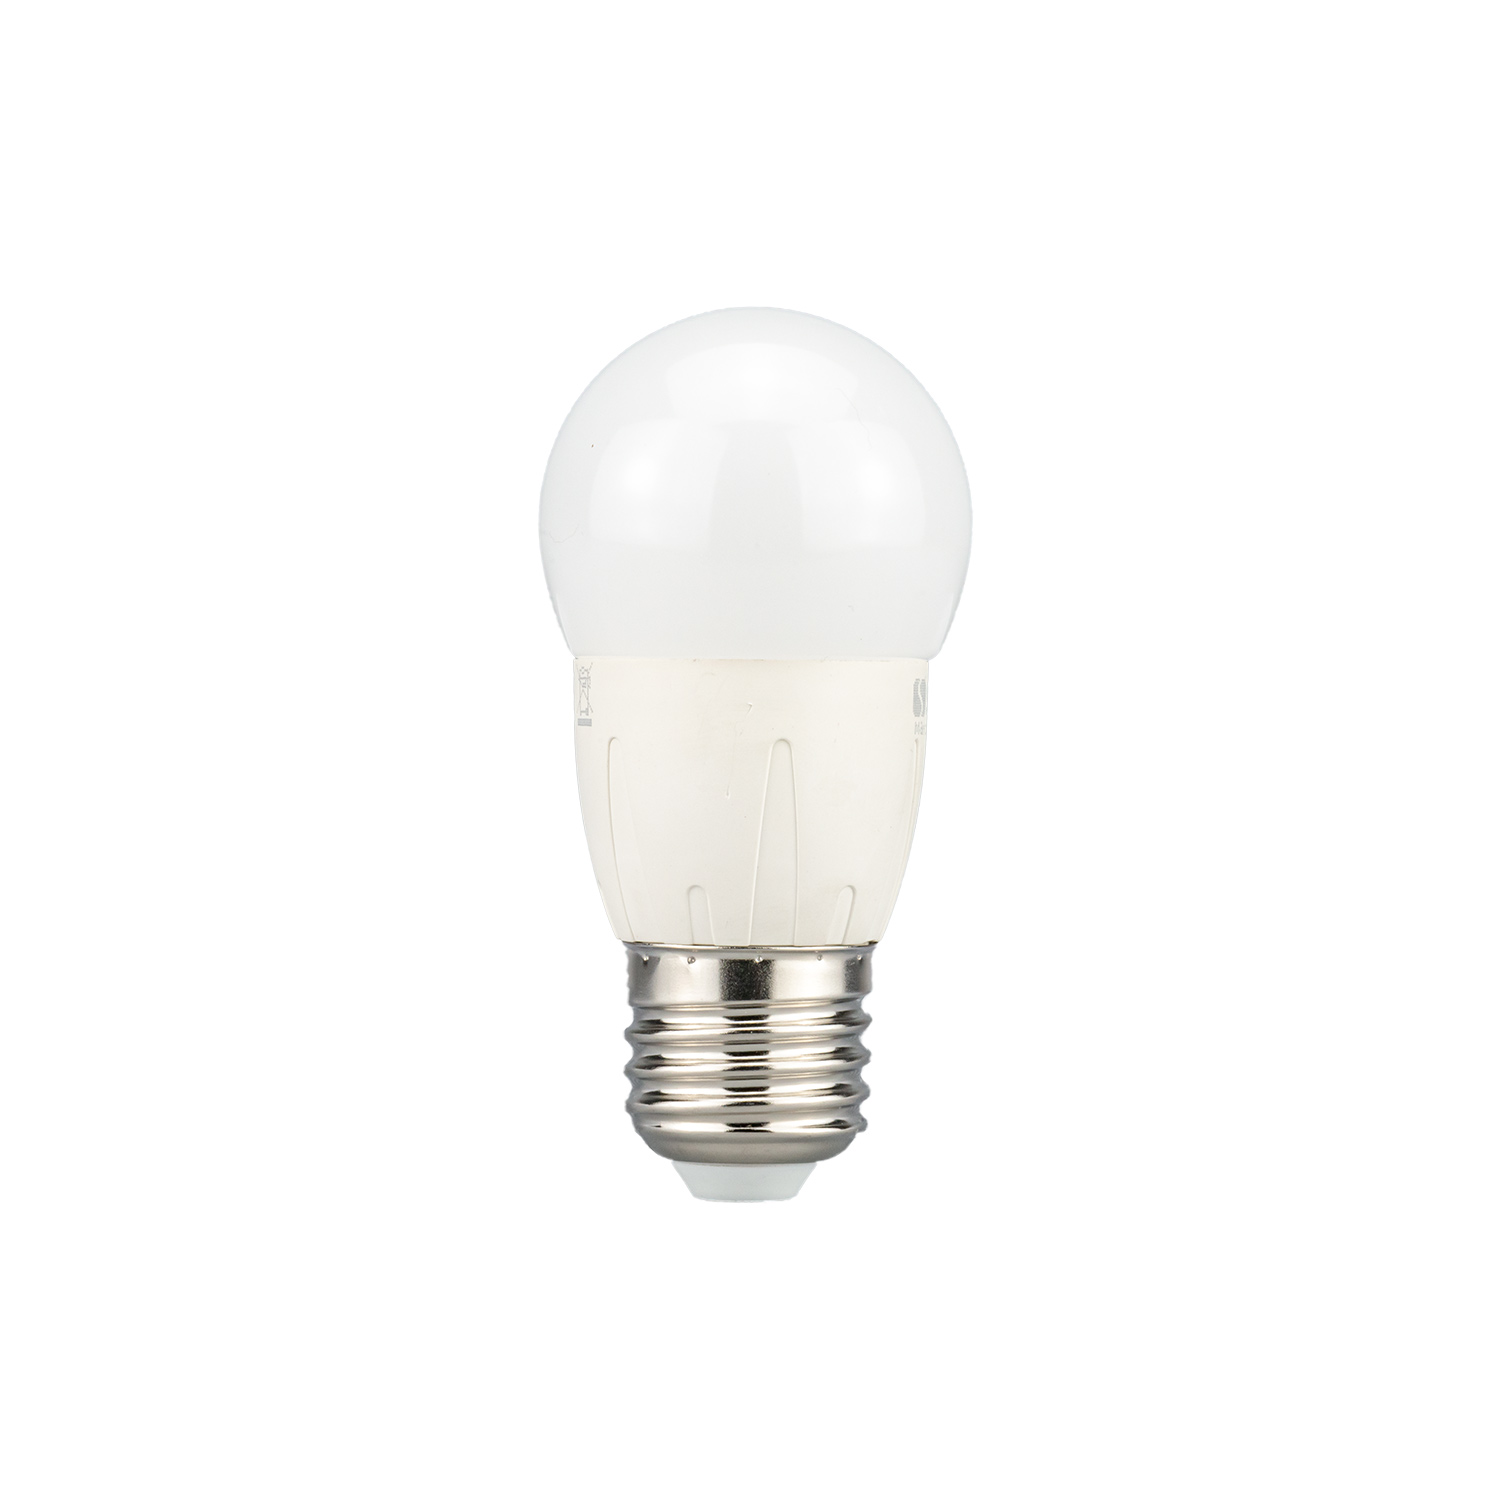 Bombillas 6W LED E27 G45 blanco equivalente a 40W incandescente luz neutra 4200K